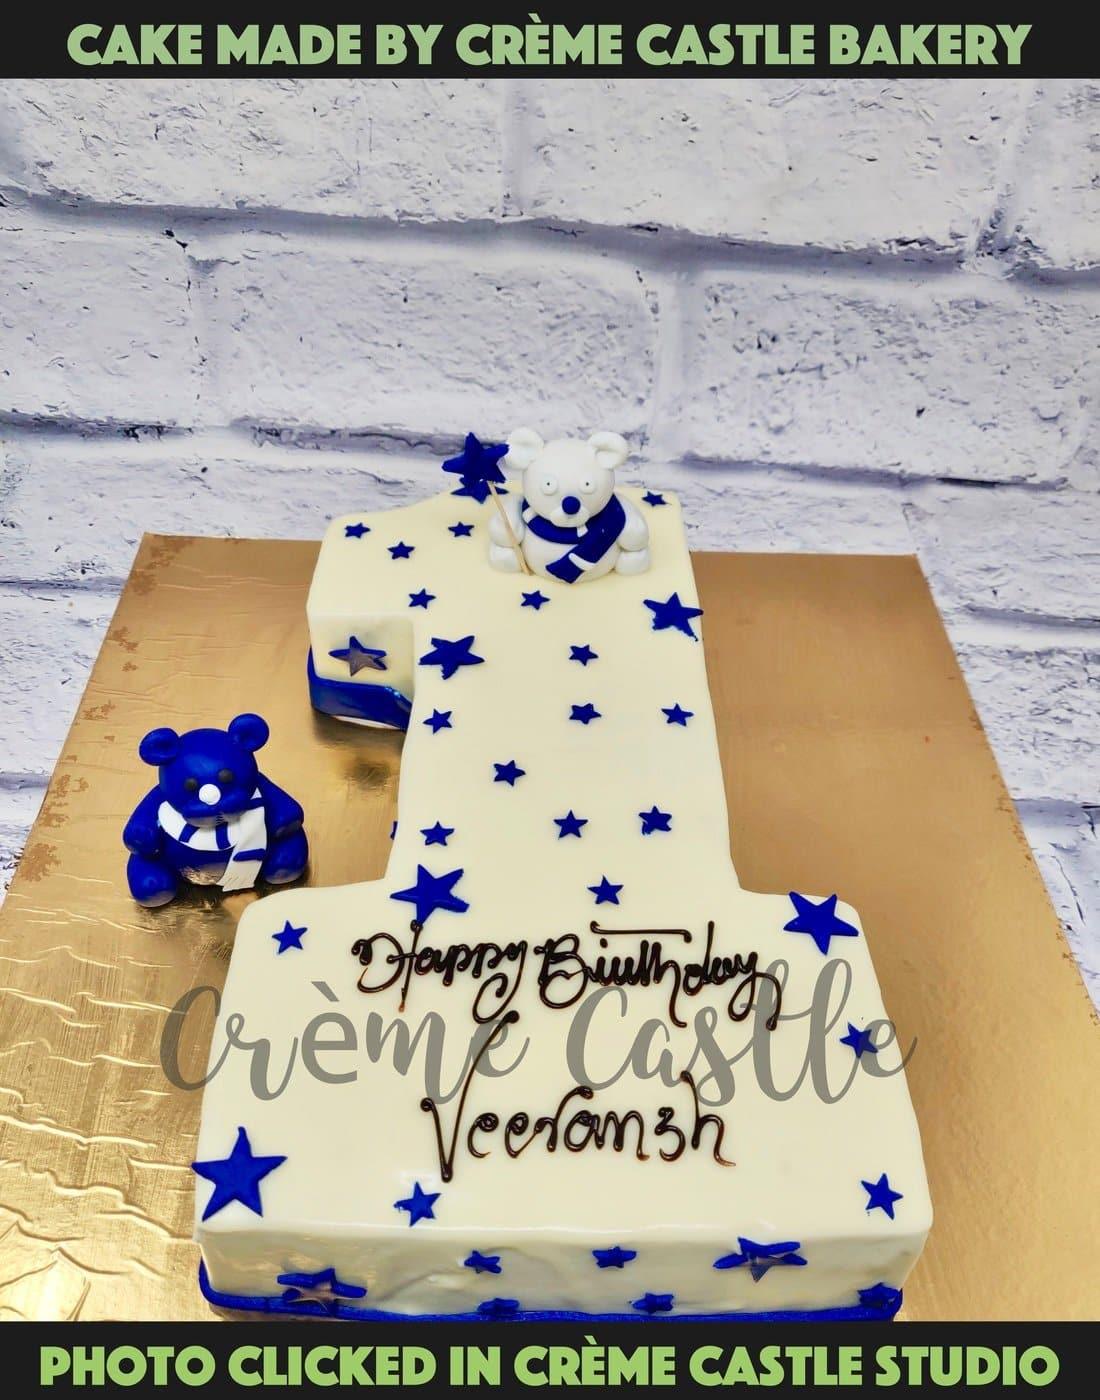 1st Birthday Cake | Cakes on 1st Birthday for Girls & Boys - Winni